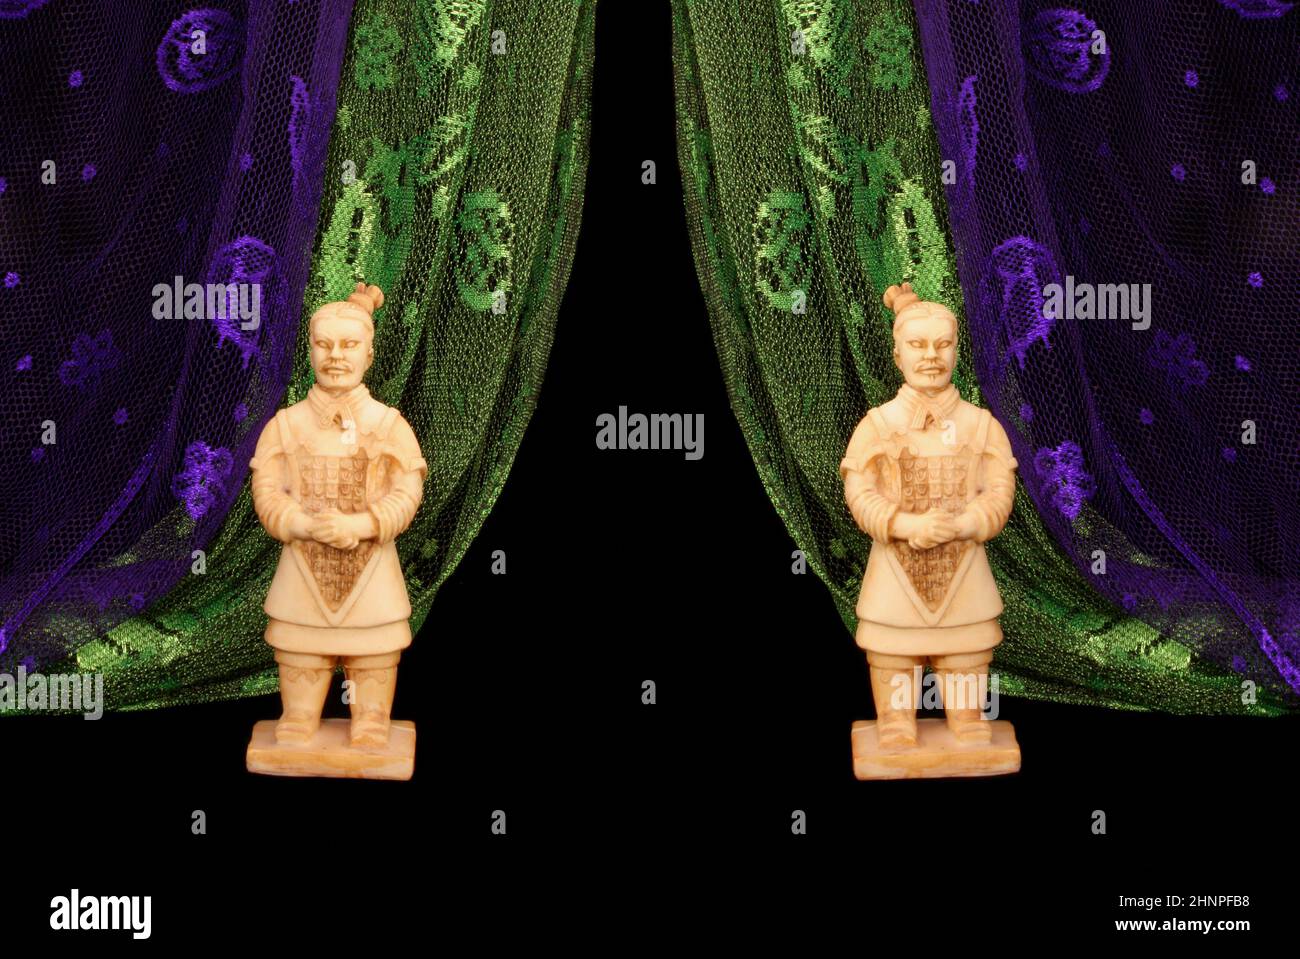 Statues de guerriers asiatiques sur fond noir avec des foulards verts et violets Banque D'Images